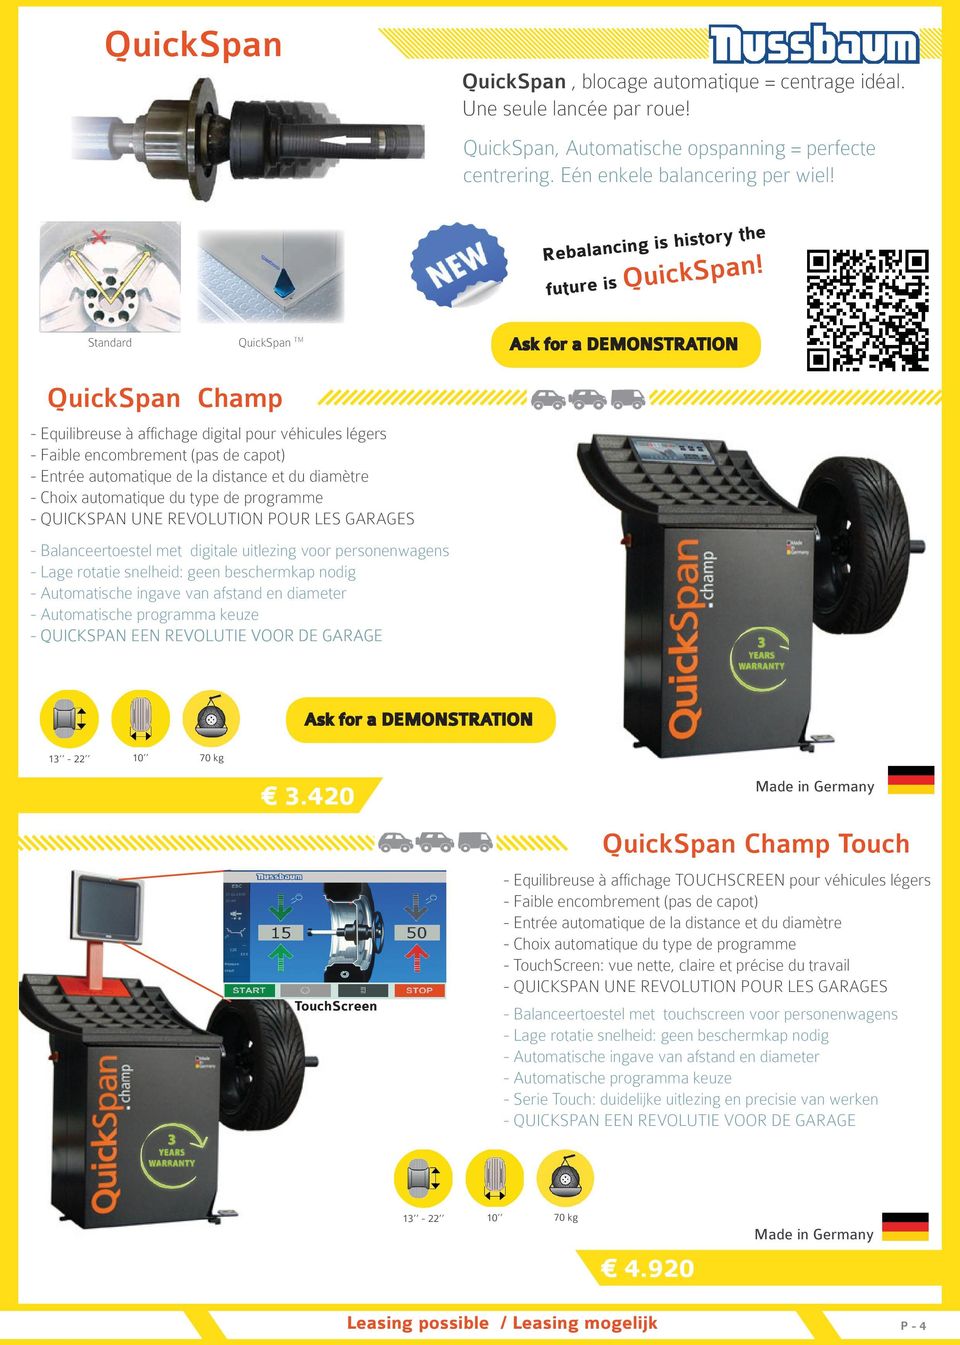 Standard QuickSpan TM QuickSpan Champ - Equilibreuse à affichage digital pour véhicules légers - Faible encombrement (pas de capot) - Entrée automatique de la distance et du diamètre - Choix